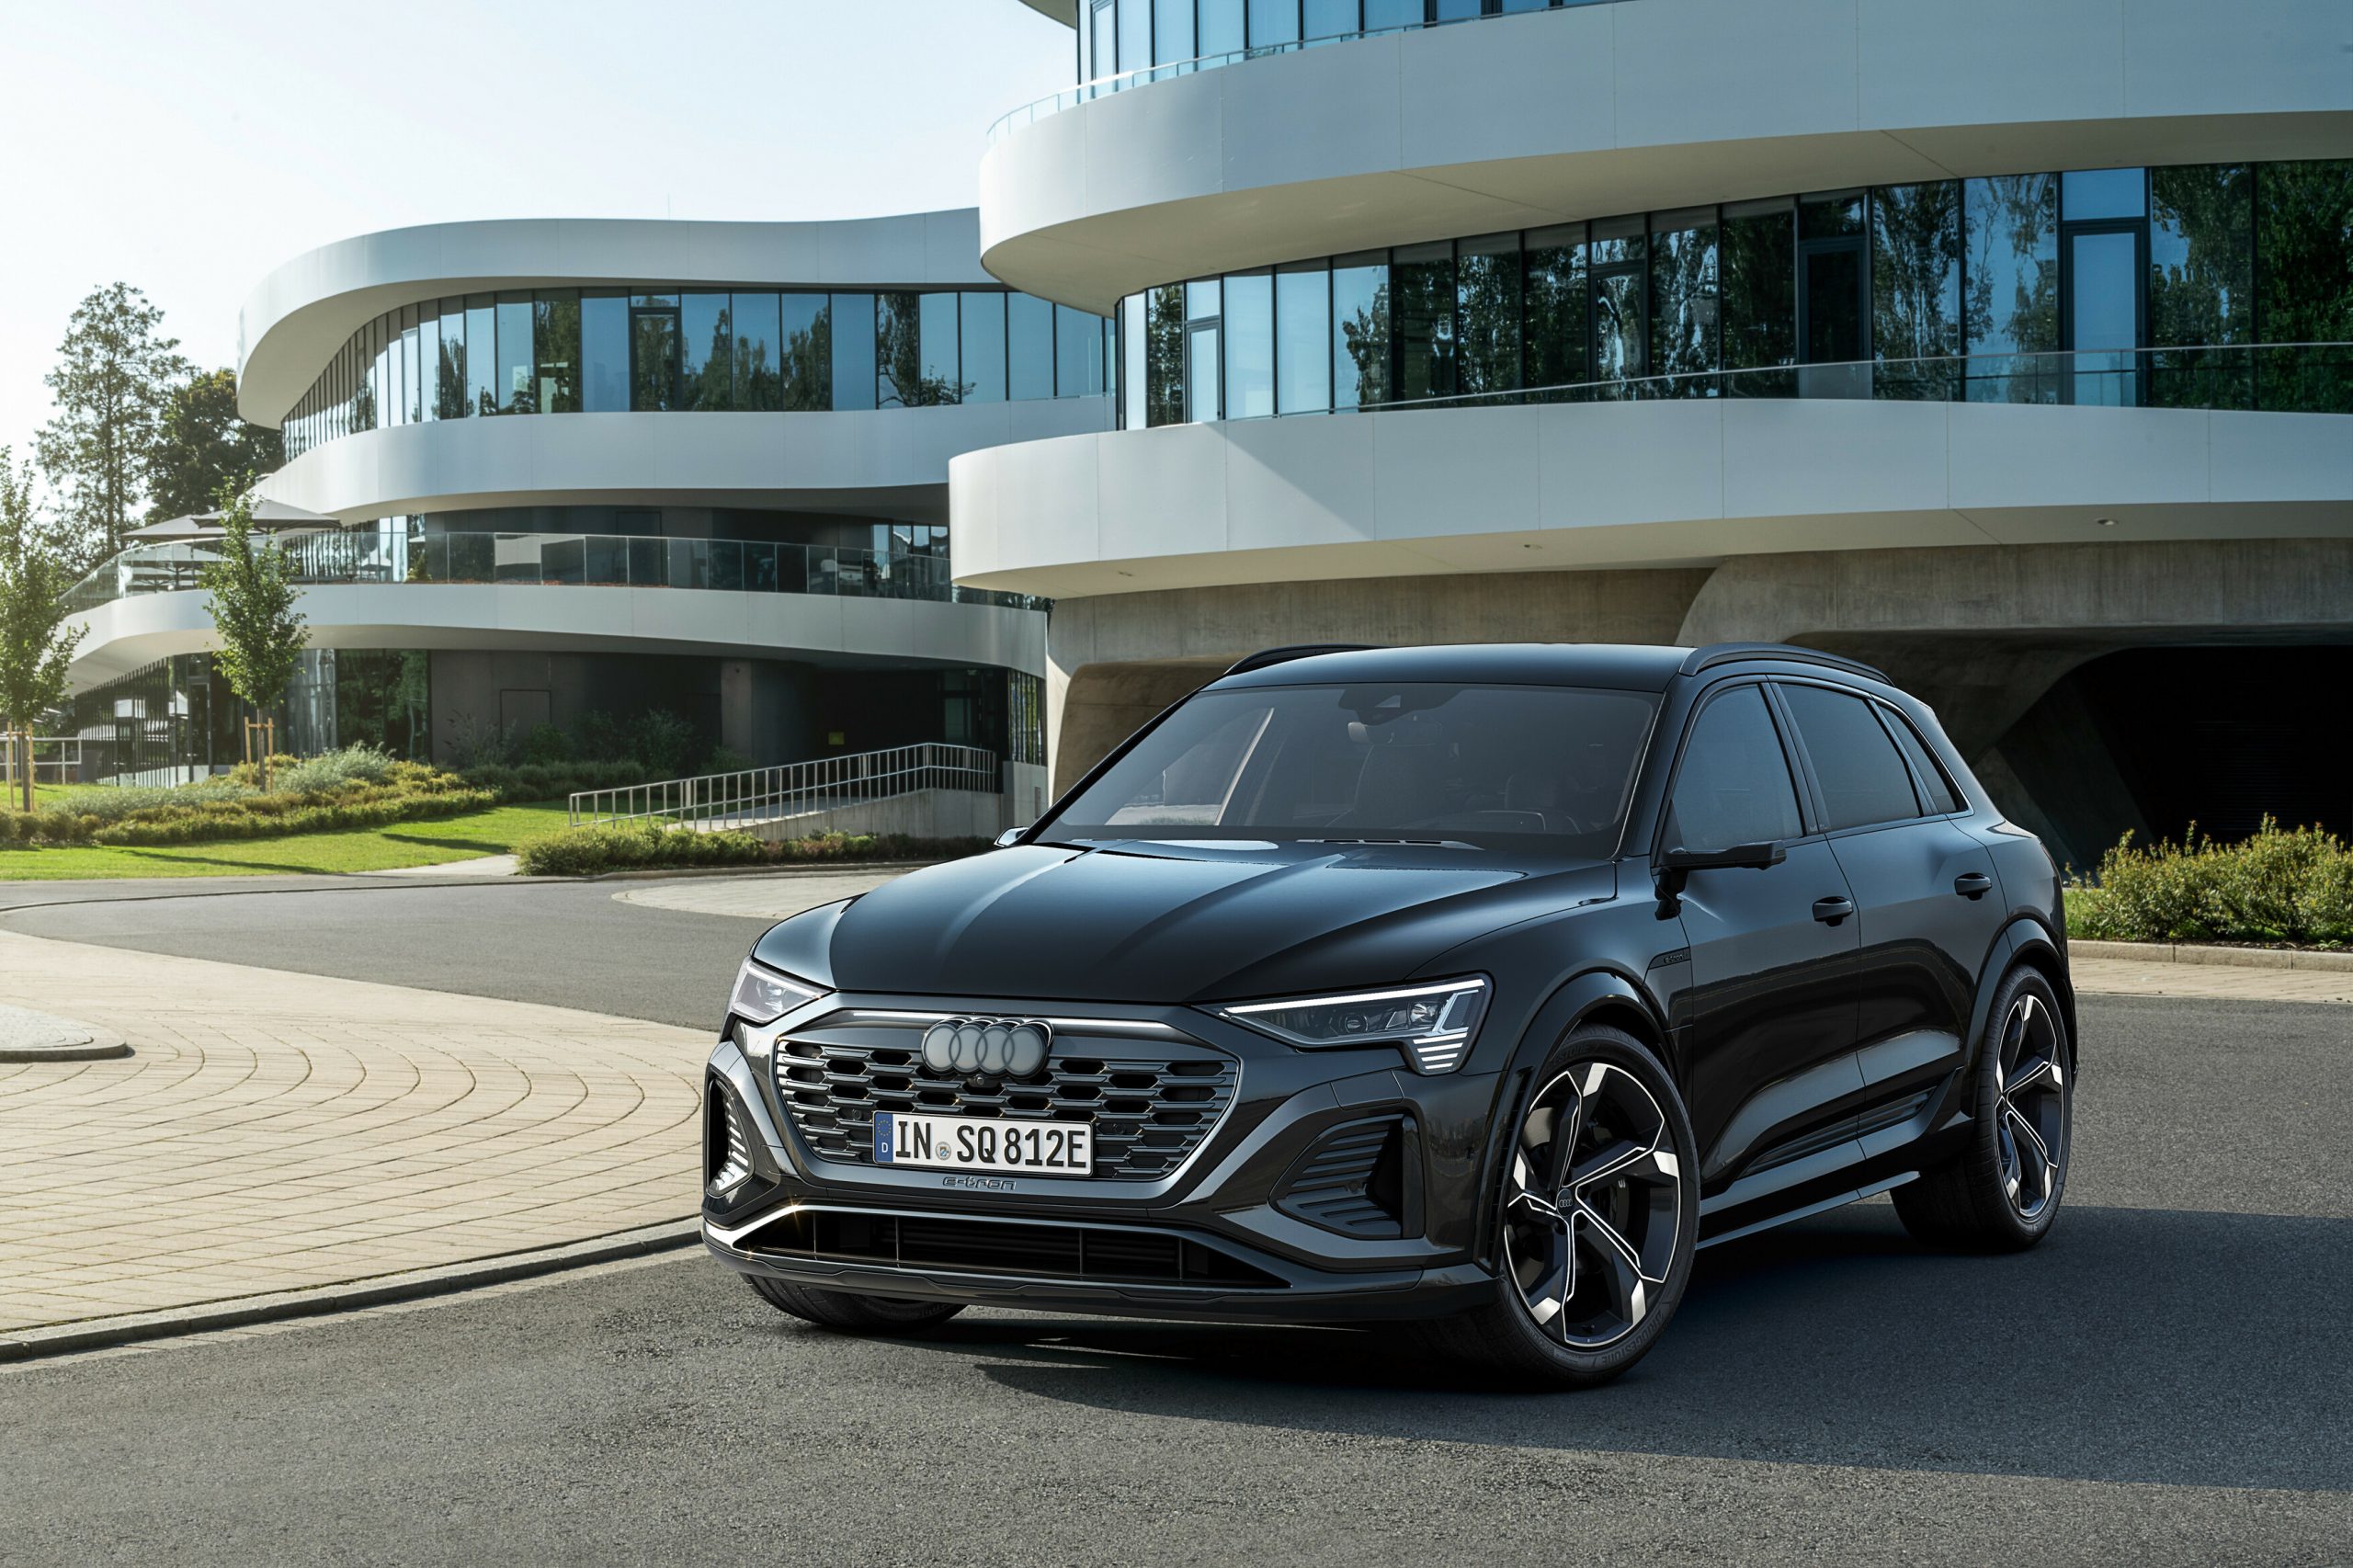 Audi renames e-tron to Q8 e-tron & adds more range with a new design